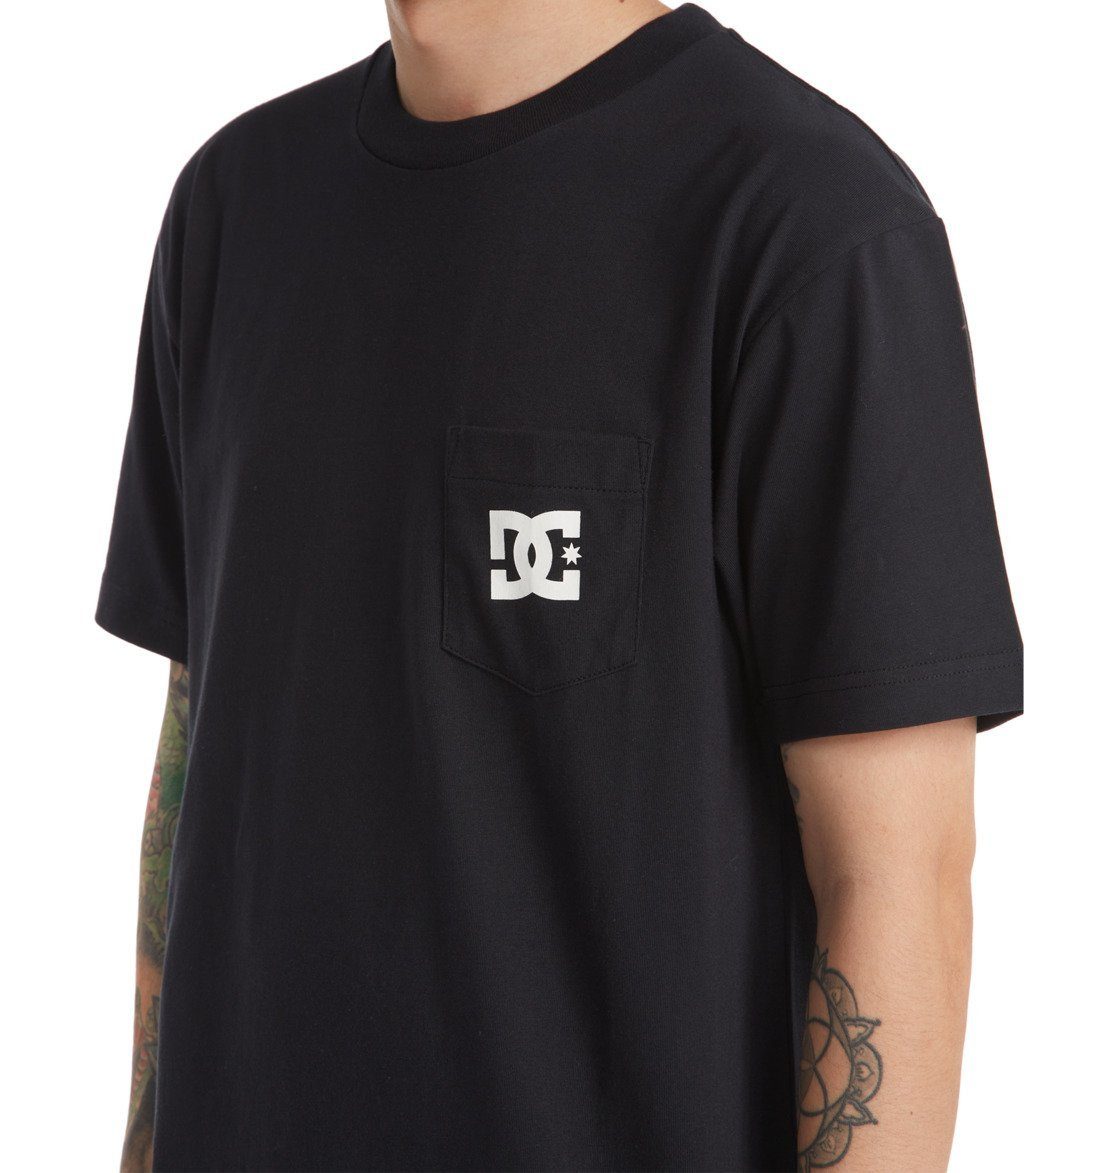 DC DC T-Shirt Shoes Black Star